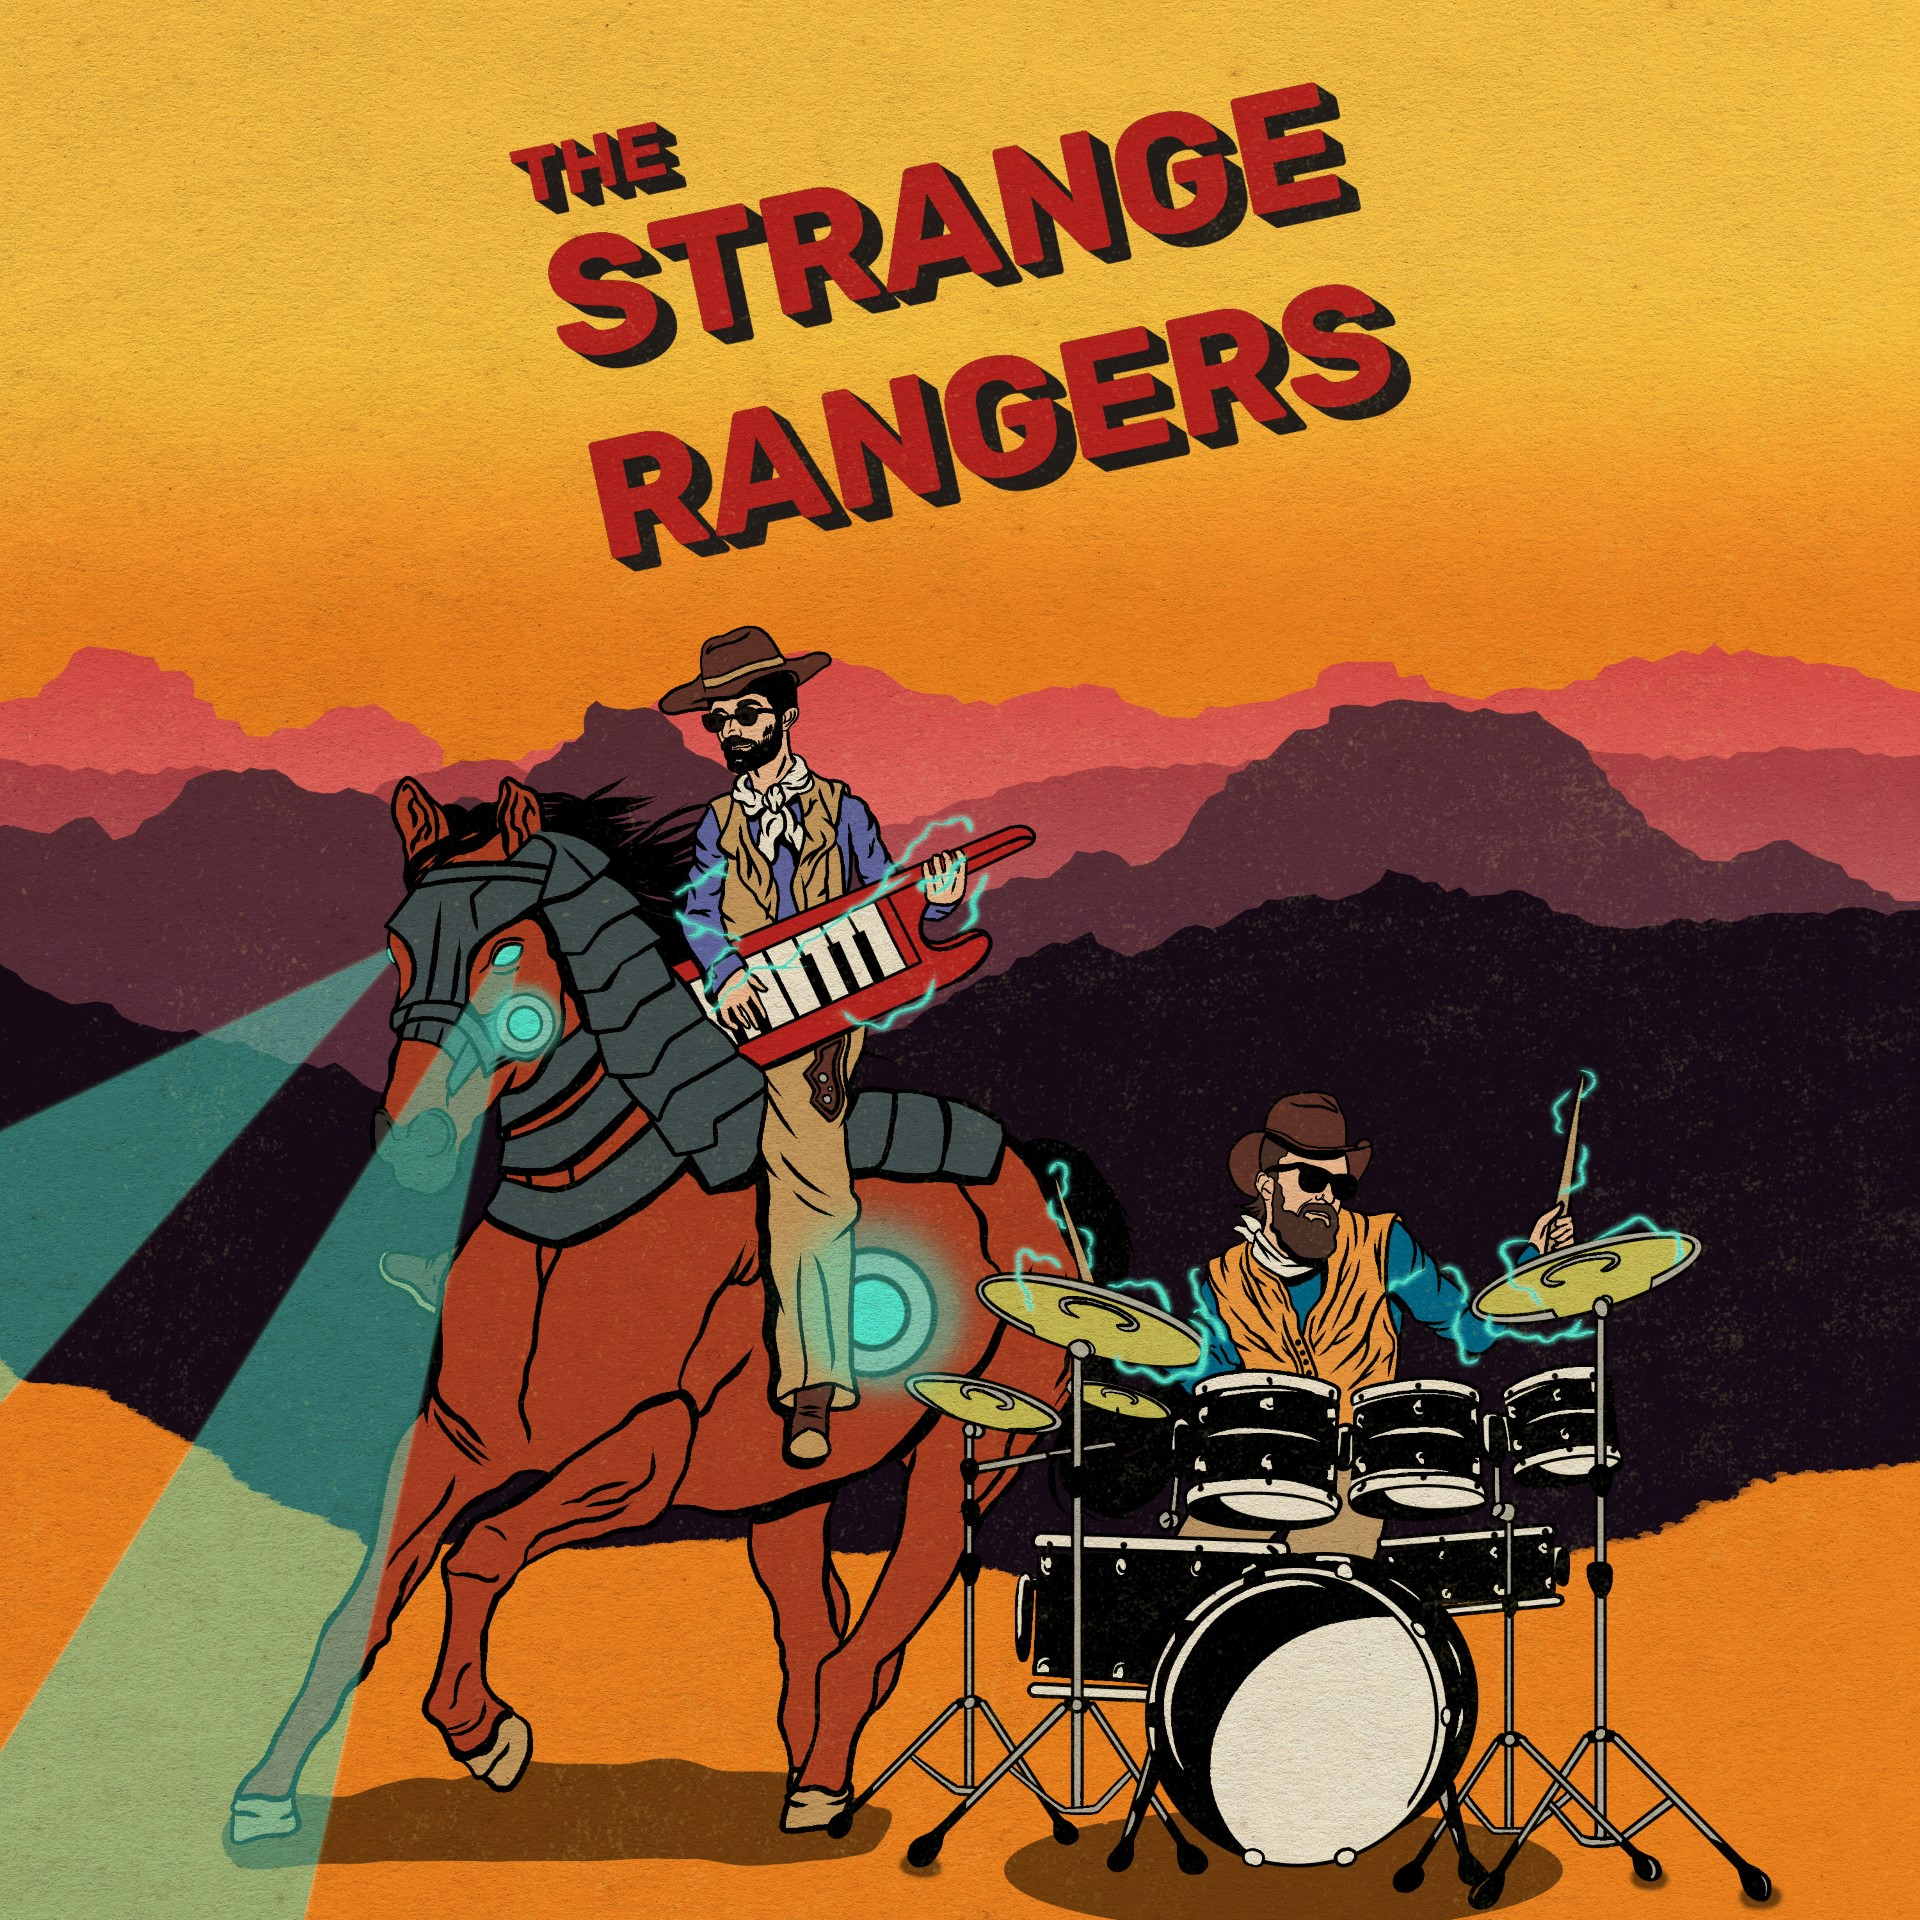 Strange Rangers